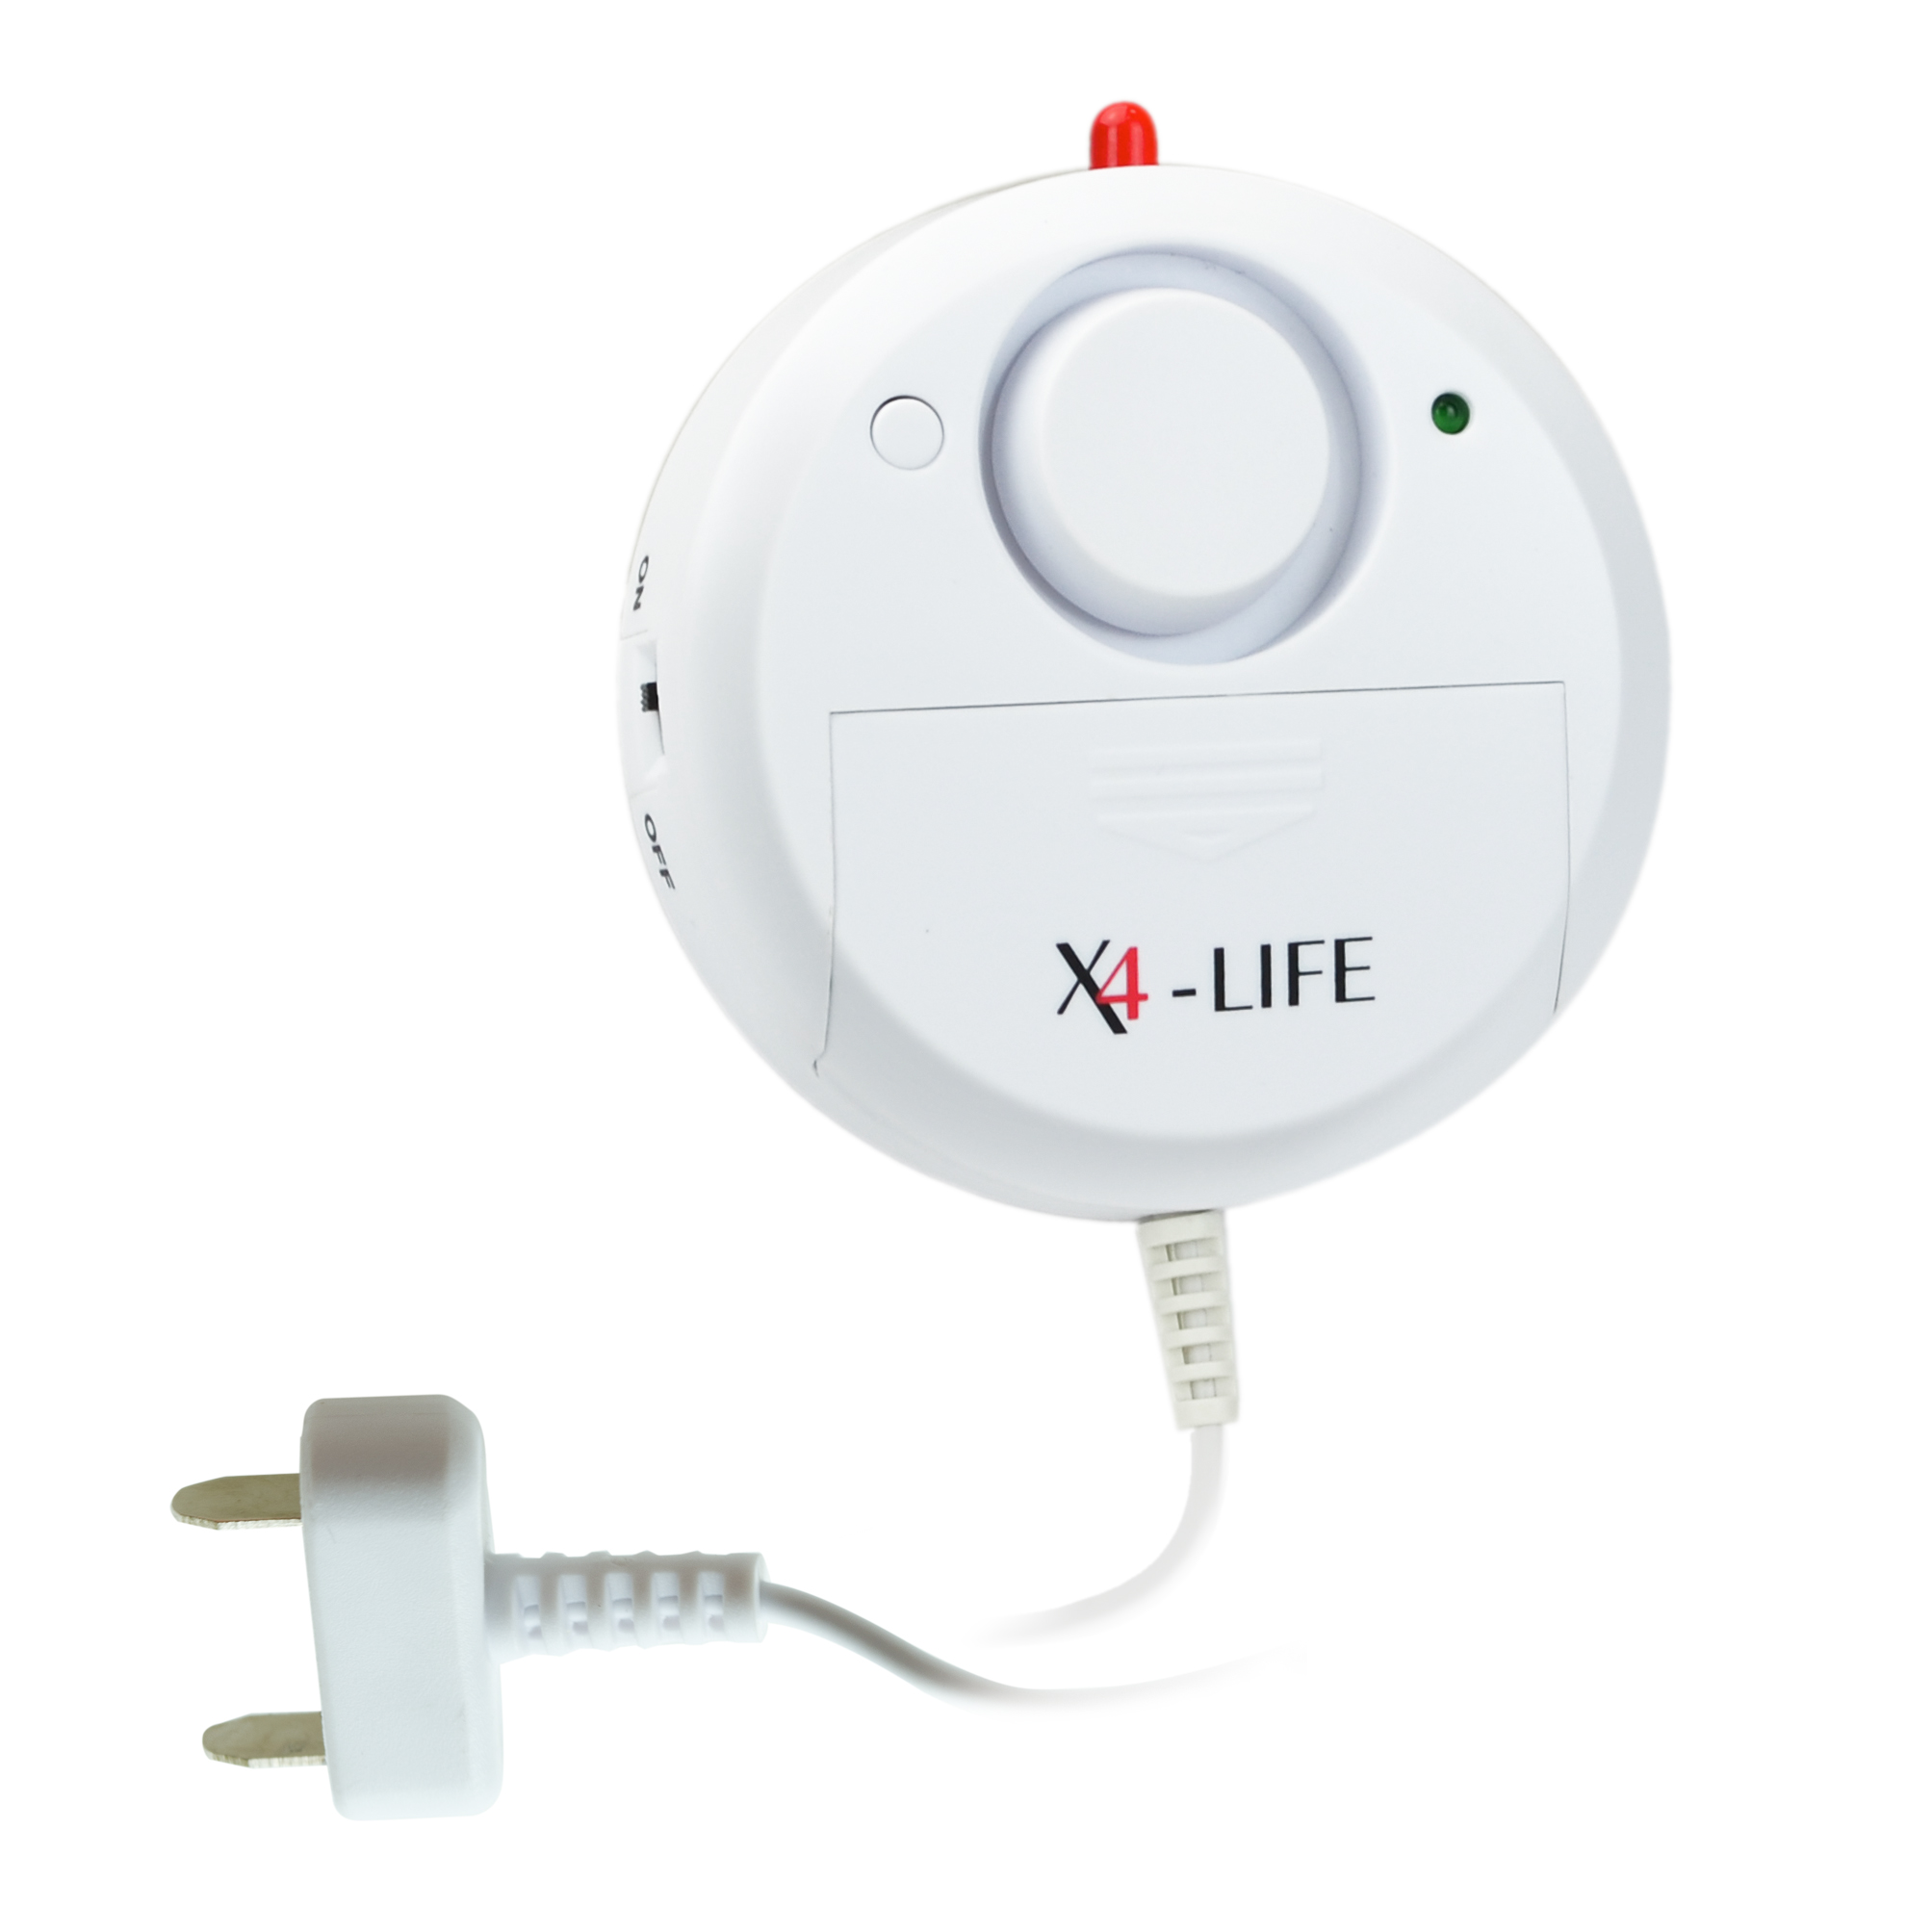 2x X4-LIFE Wasseralarm Wassermelder Wasserwächter Wasserleckdetektor